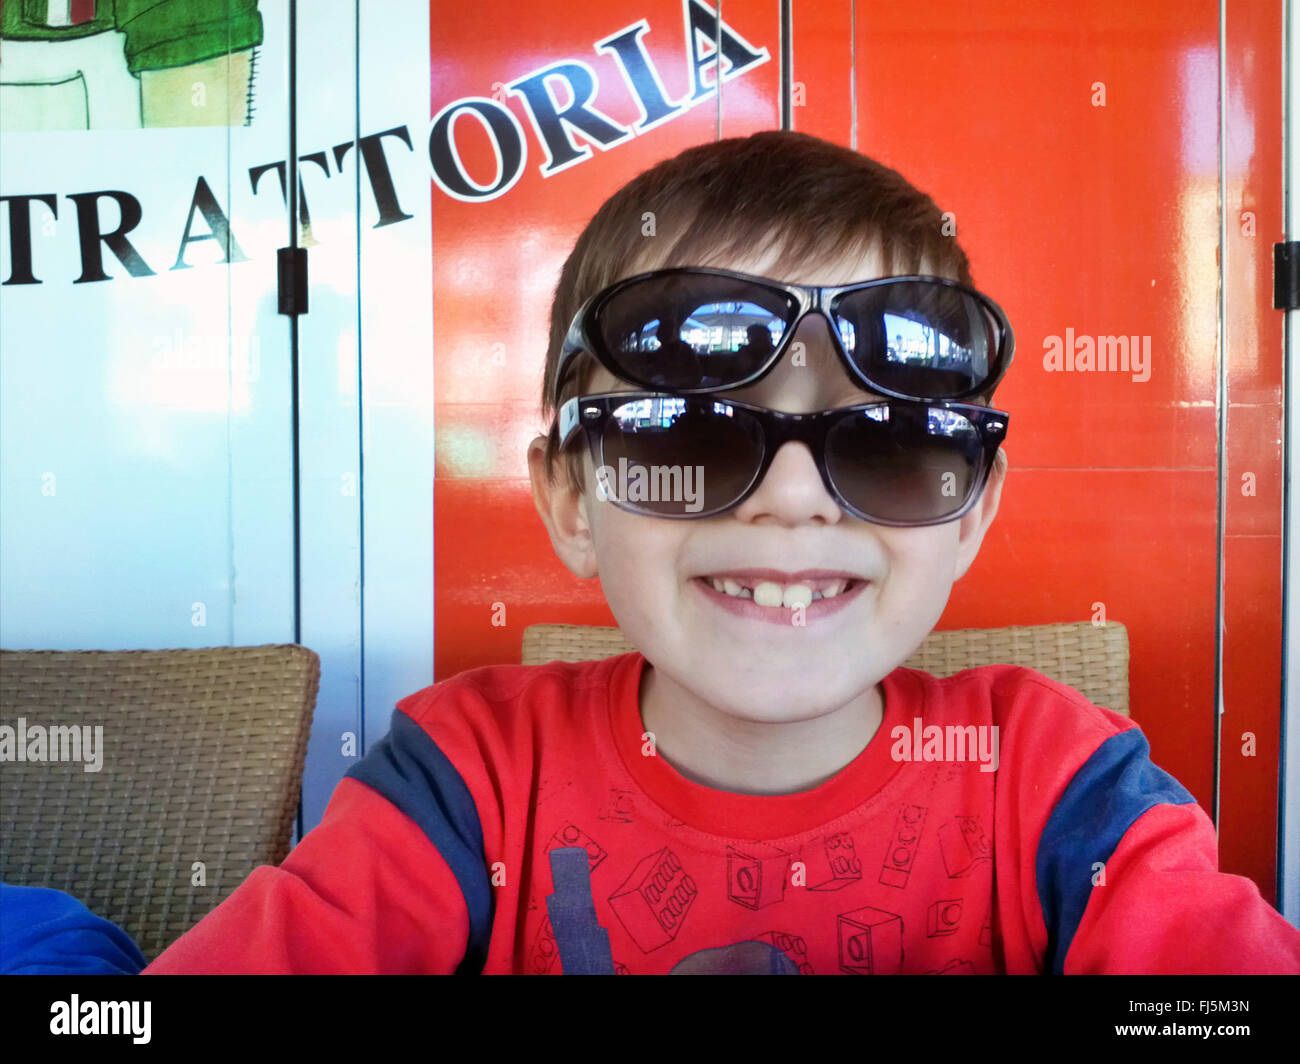 sehr coole junge mit zwei Sunglasseses in einer trattoria Stockfoto